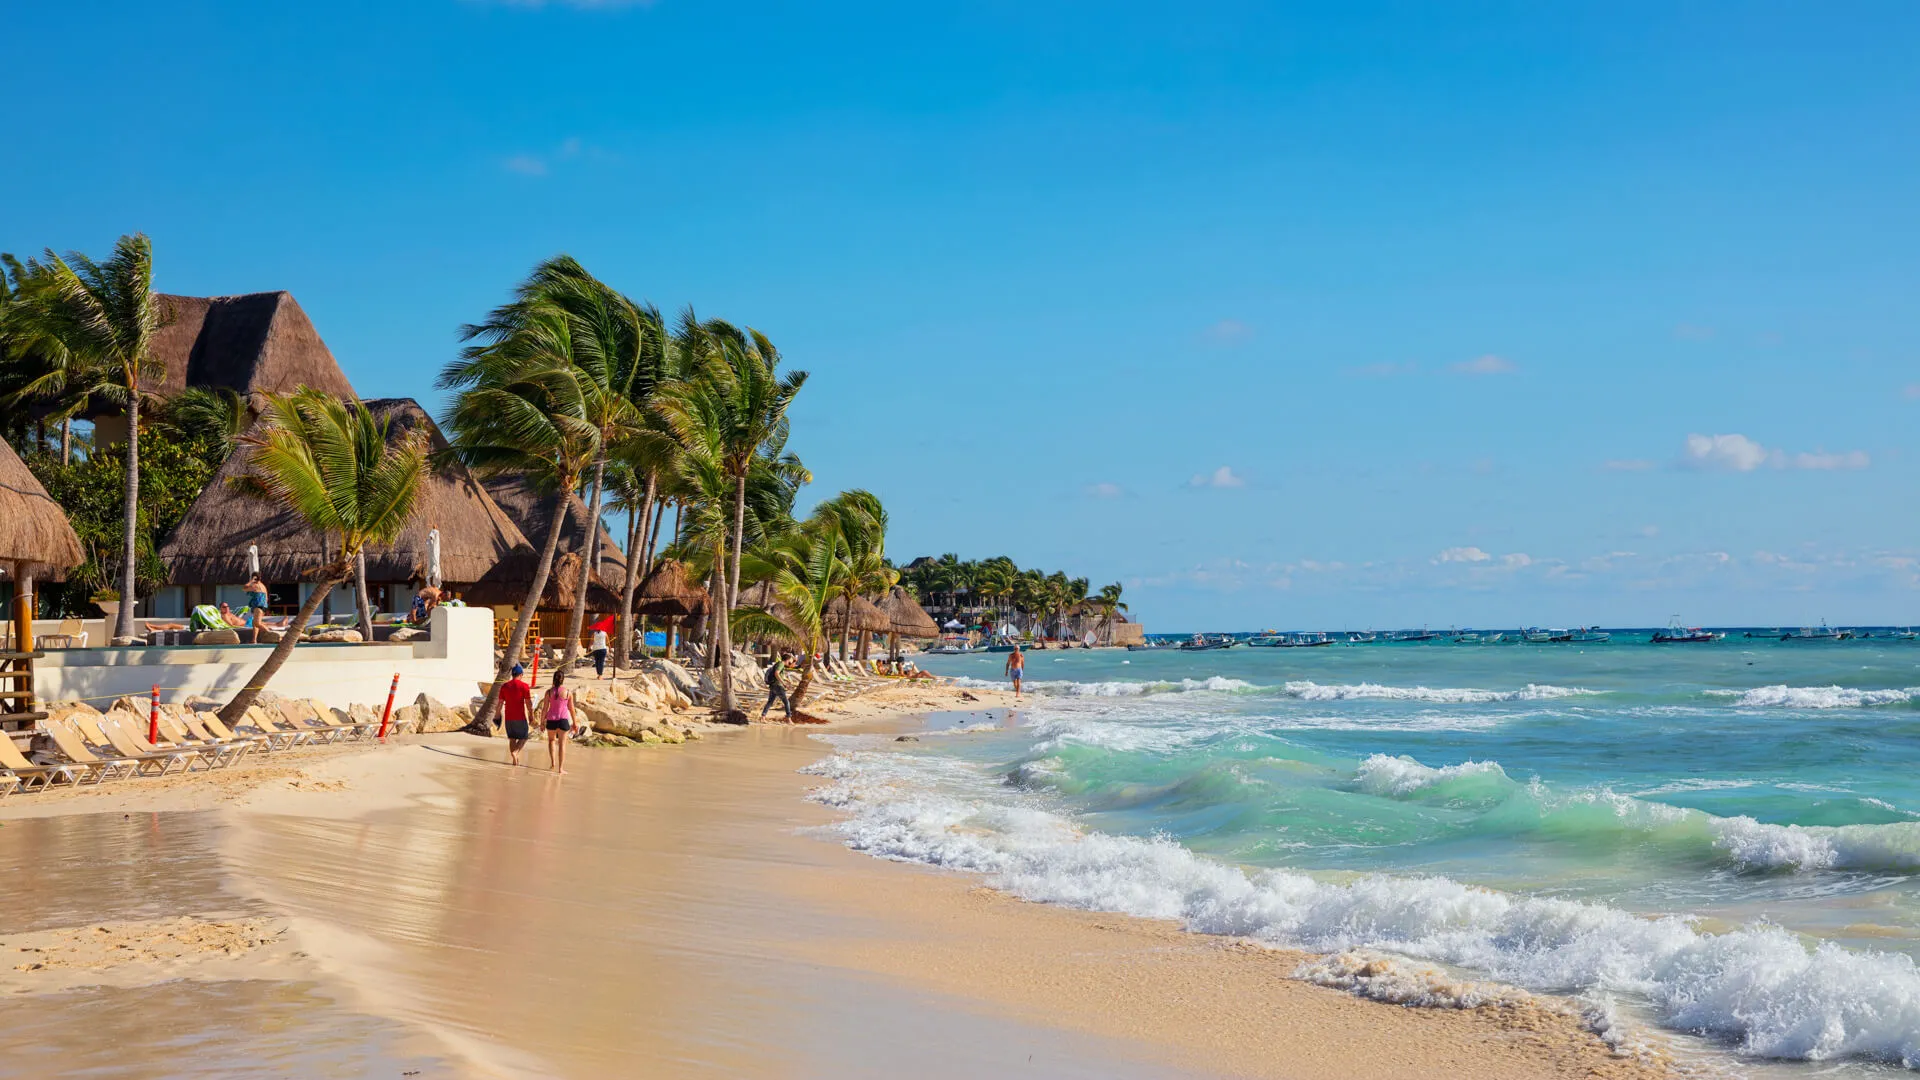 Playa del Carmen, Mexico - January 7 2016 - The beautiful beach of Playa del Carmen in Mexico.